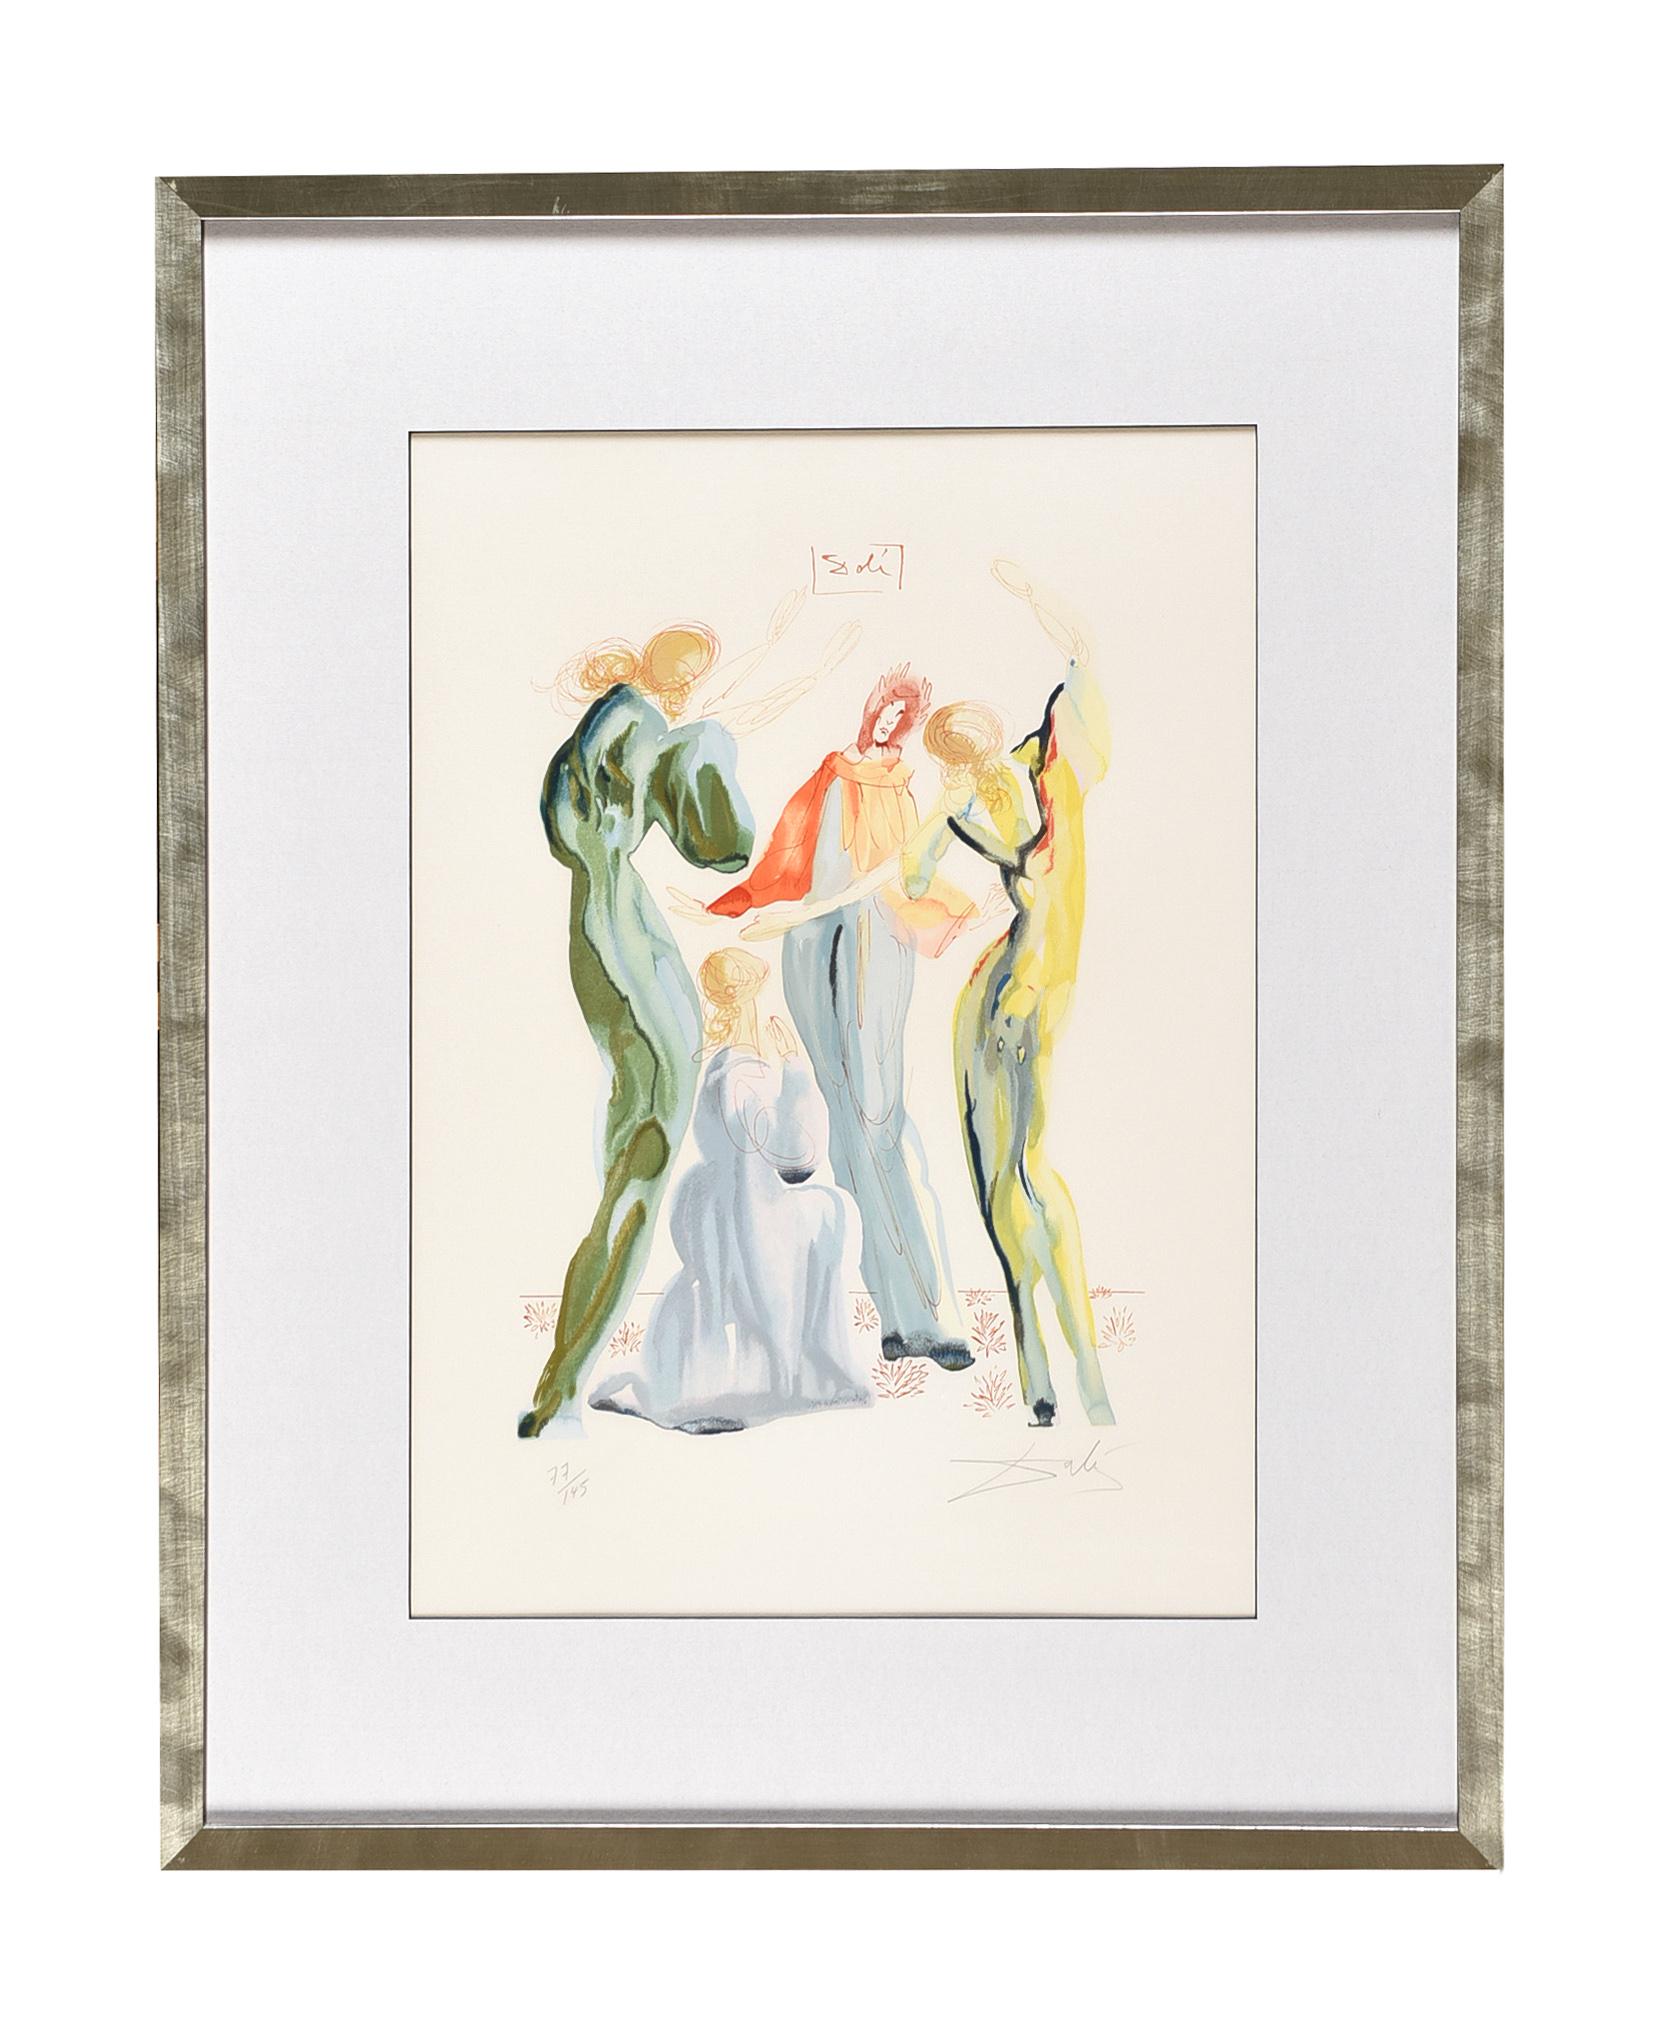 Les Servantes, or “Faith Hope Love”  - Print by Salvador Dalí